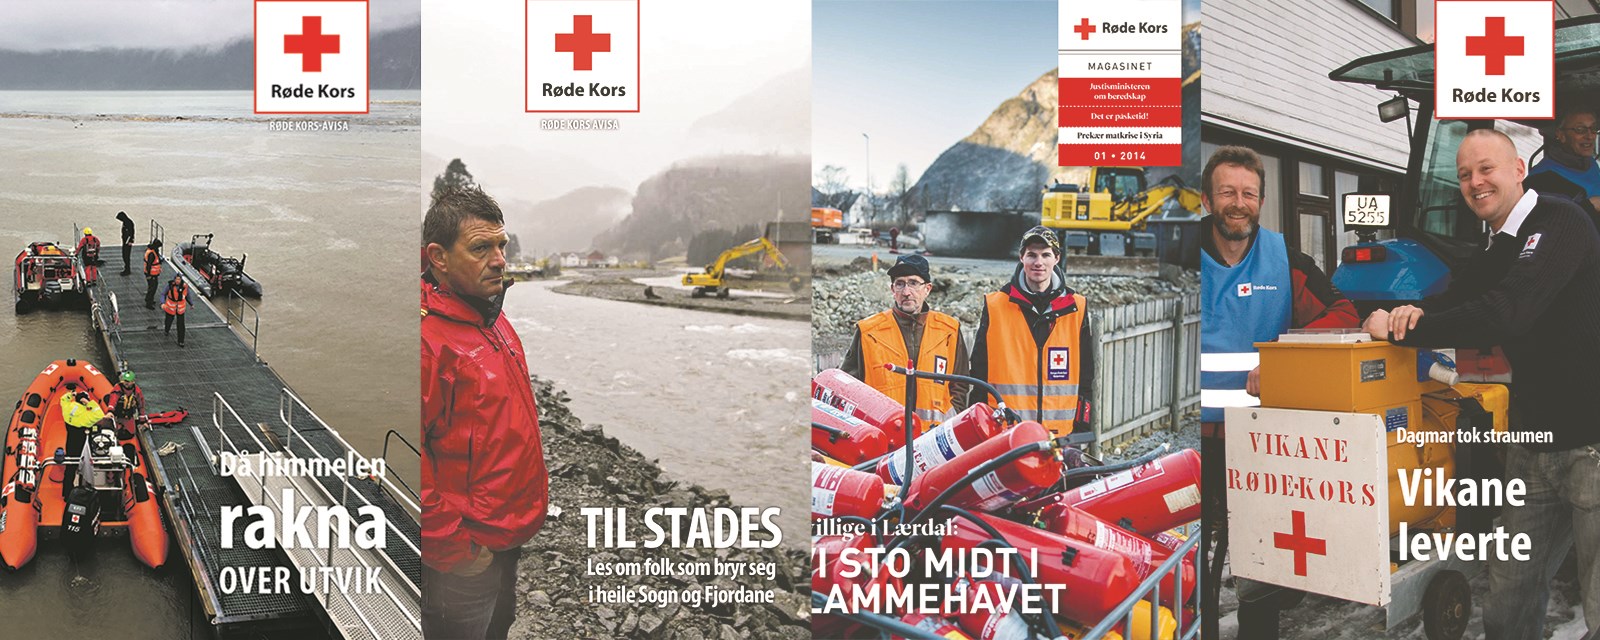 Røde Kors har spelt ei viktig rolle i mange dramatiske hendingar i Sogn og Fjordane